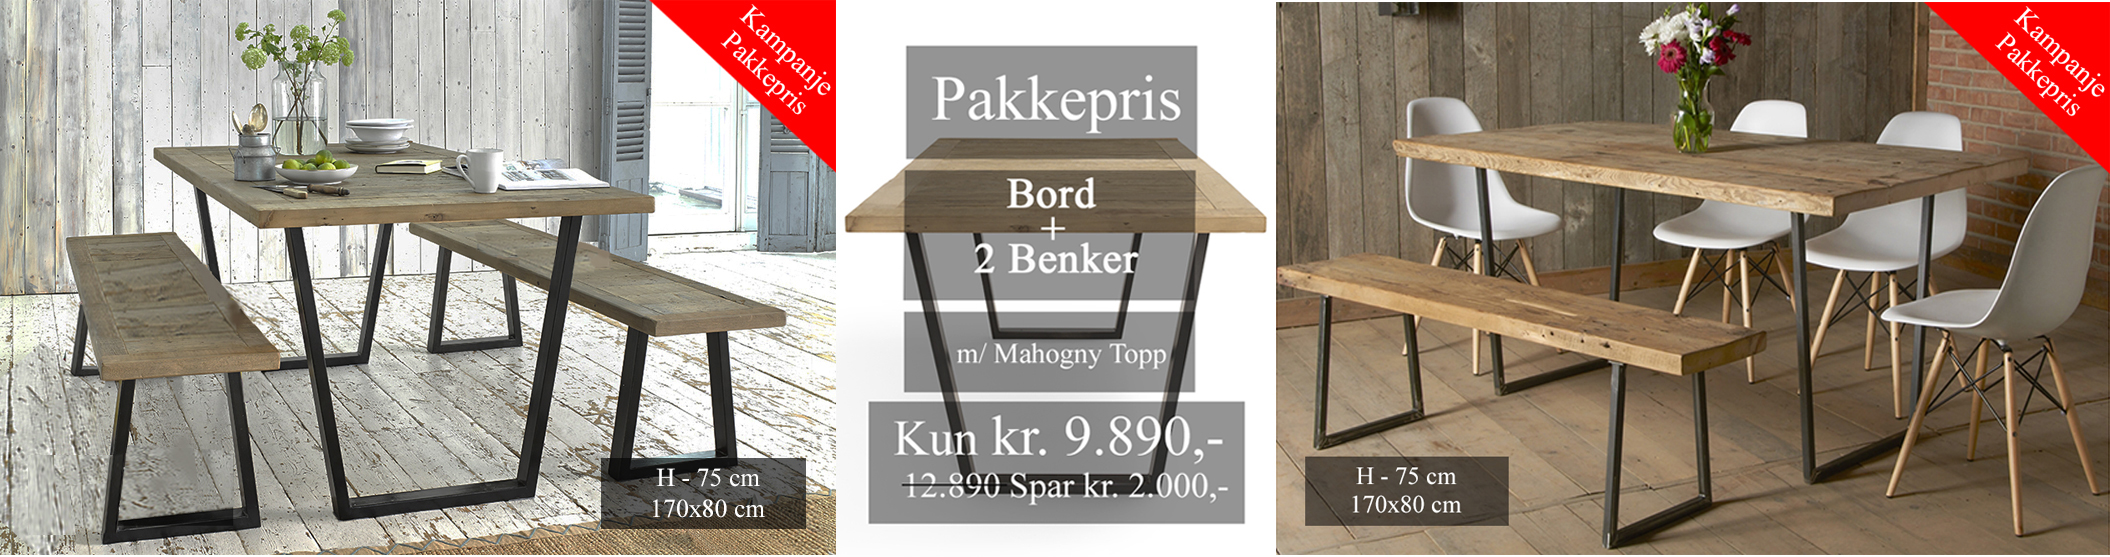 ArtSteel Pakkepris Bord + 2 Benker m/ Mahogny Topp